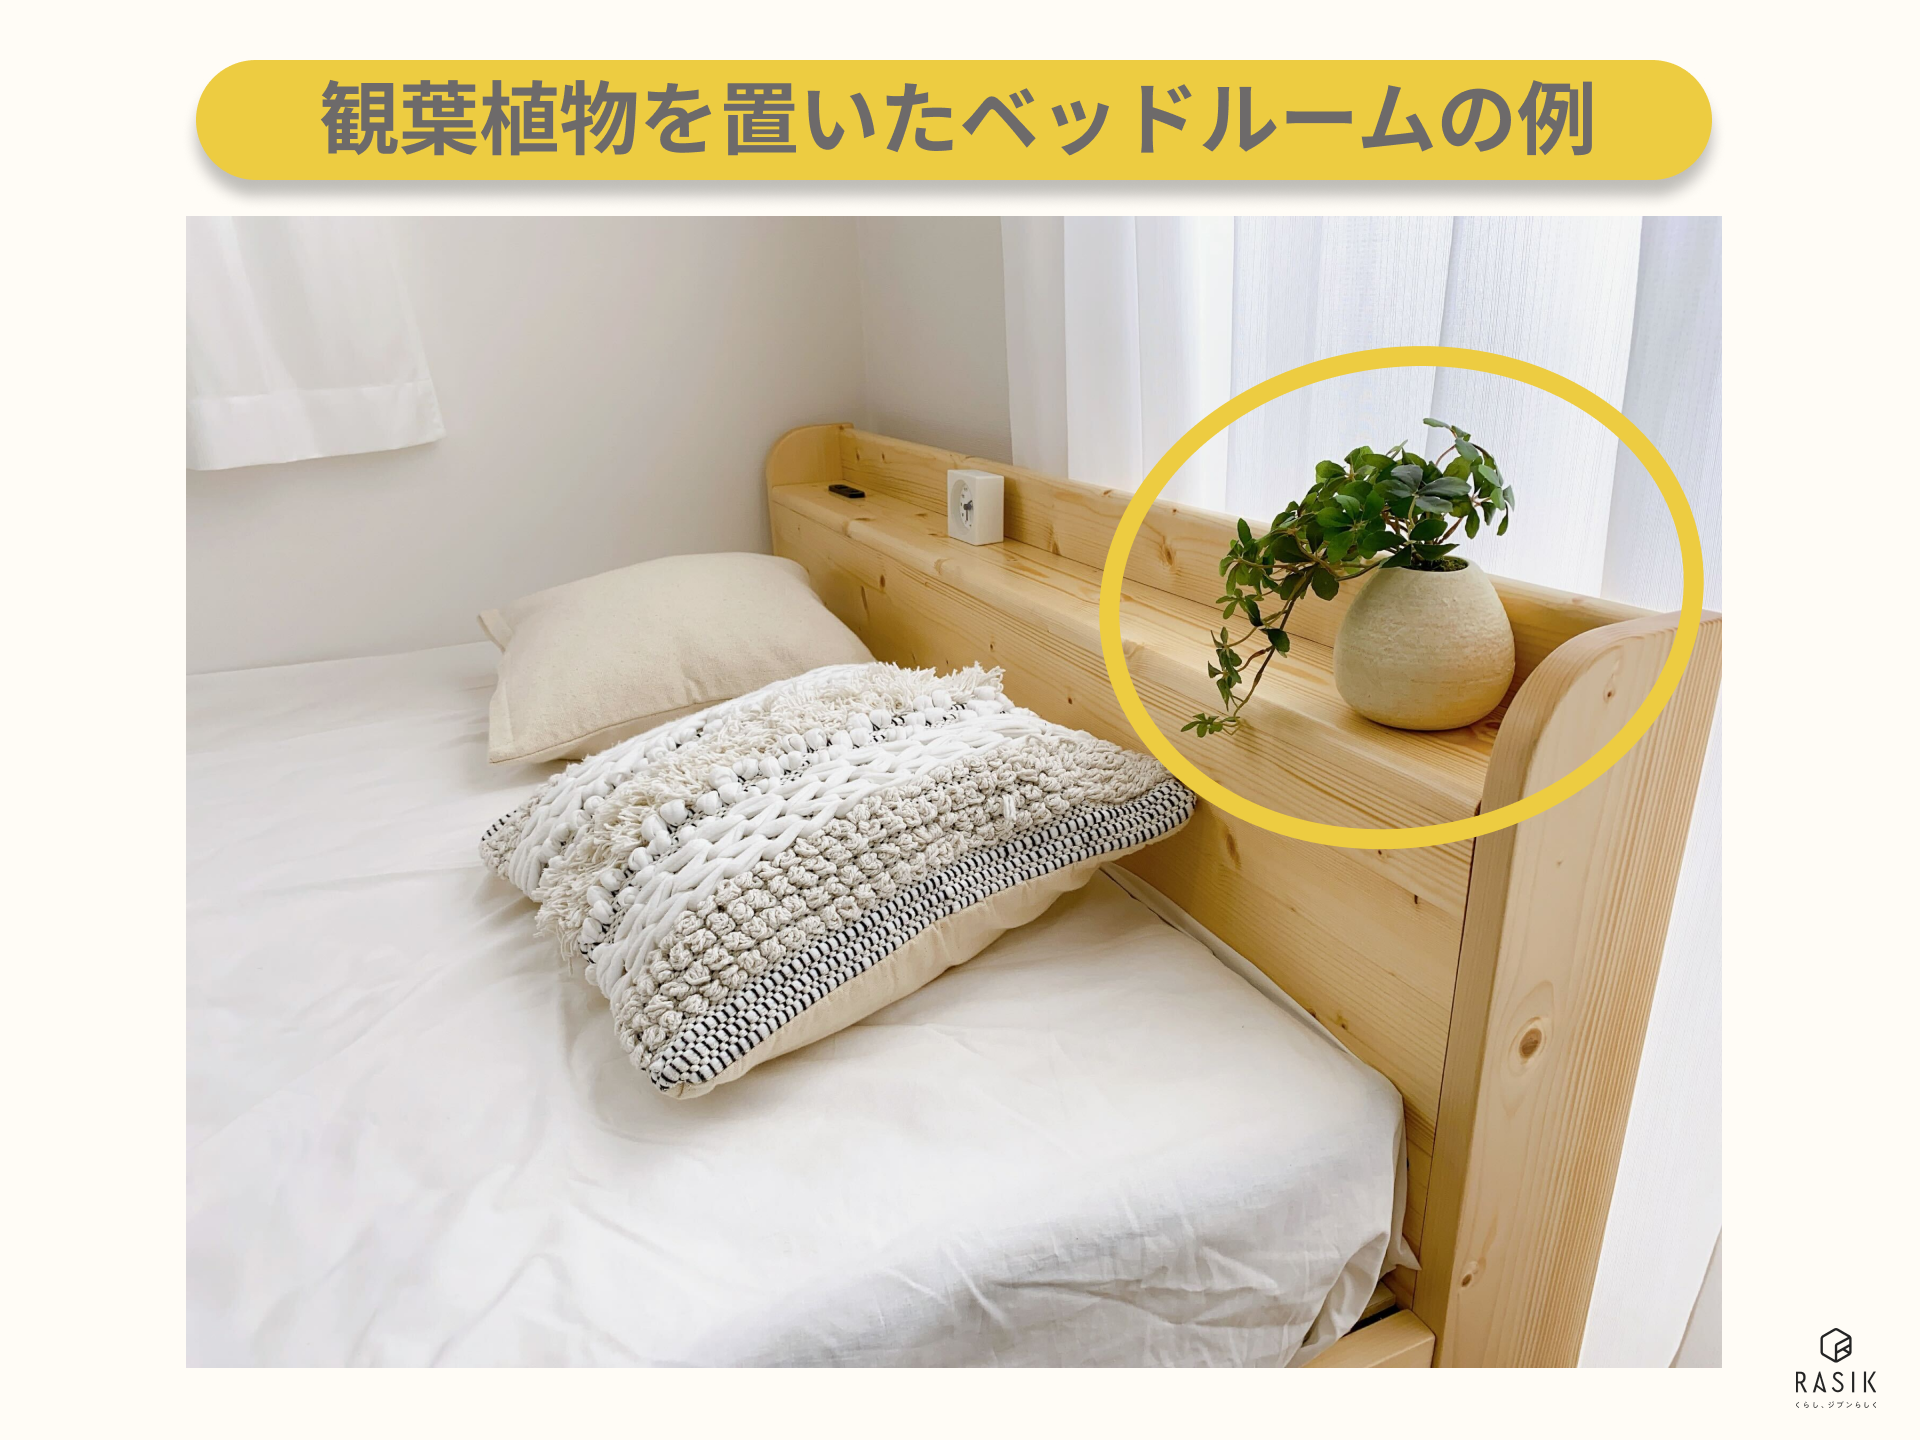 観葉植物を置いたベッドルームの例の画像